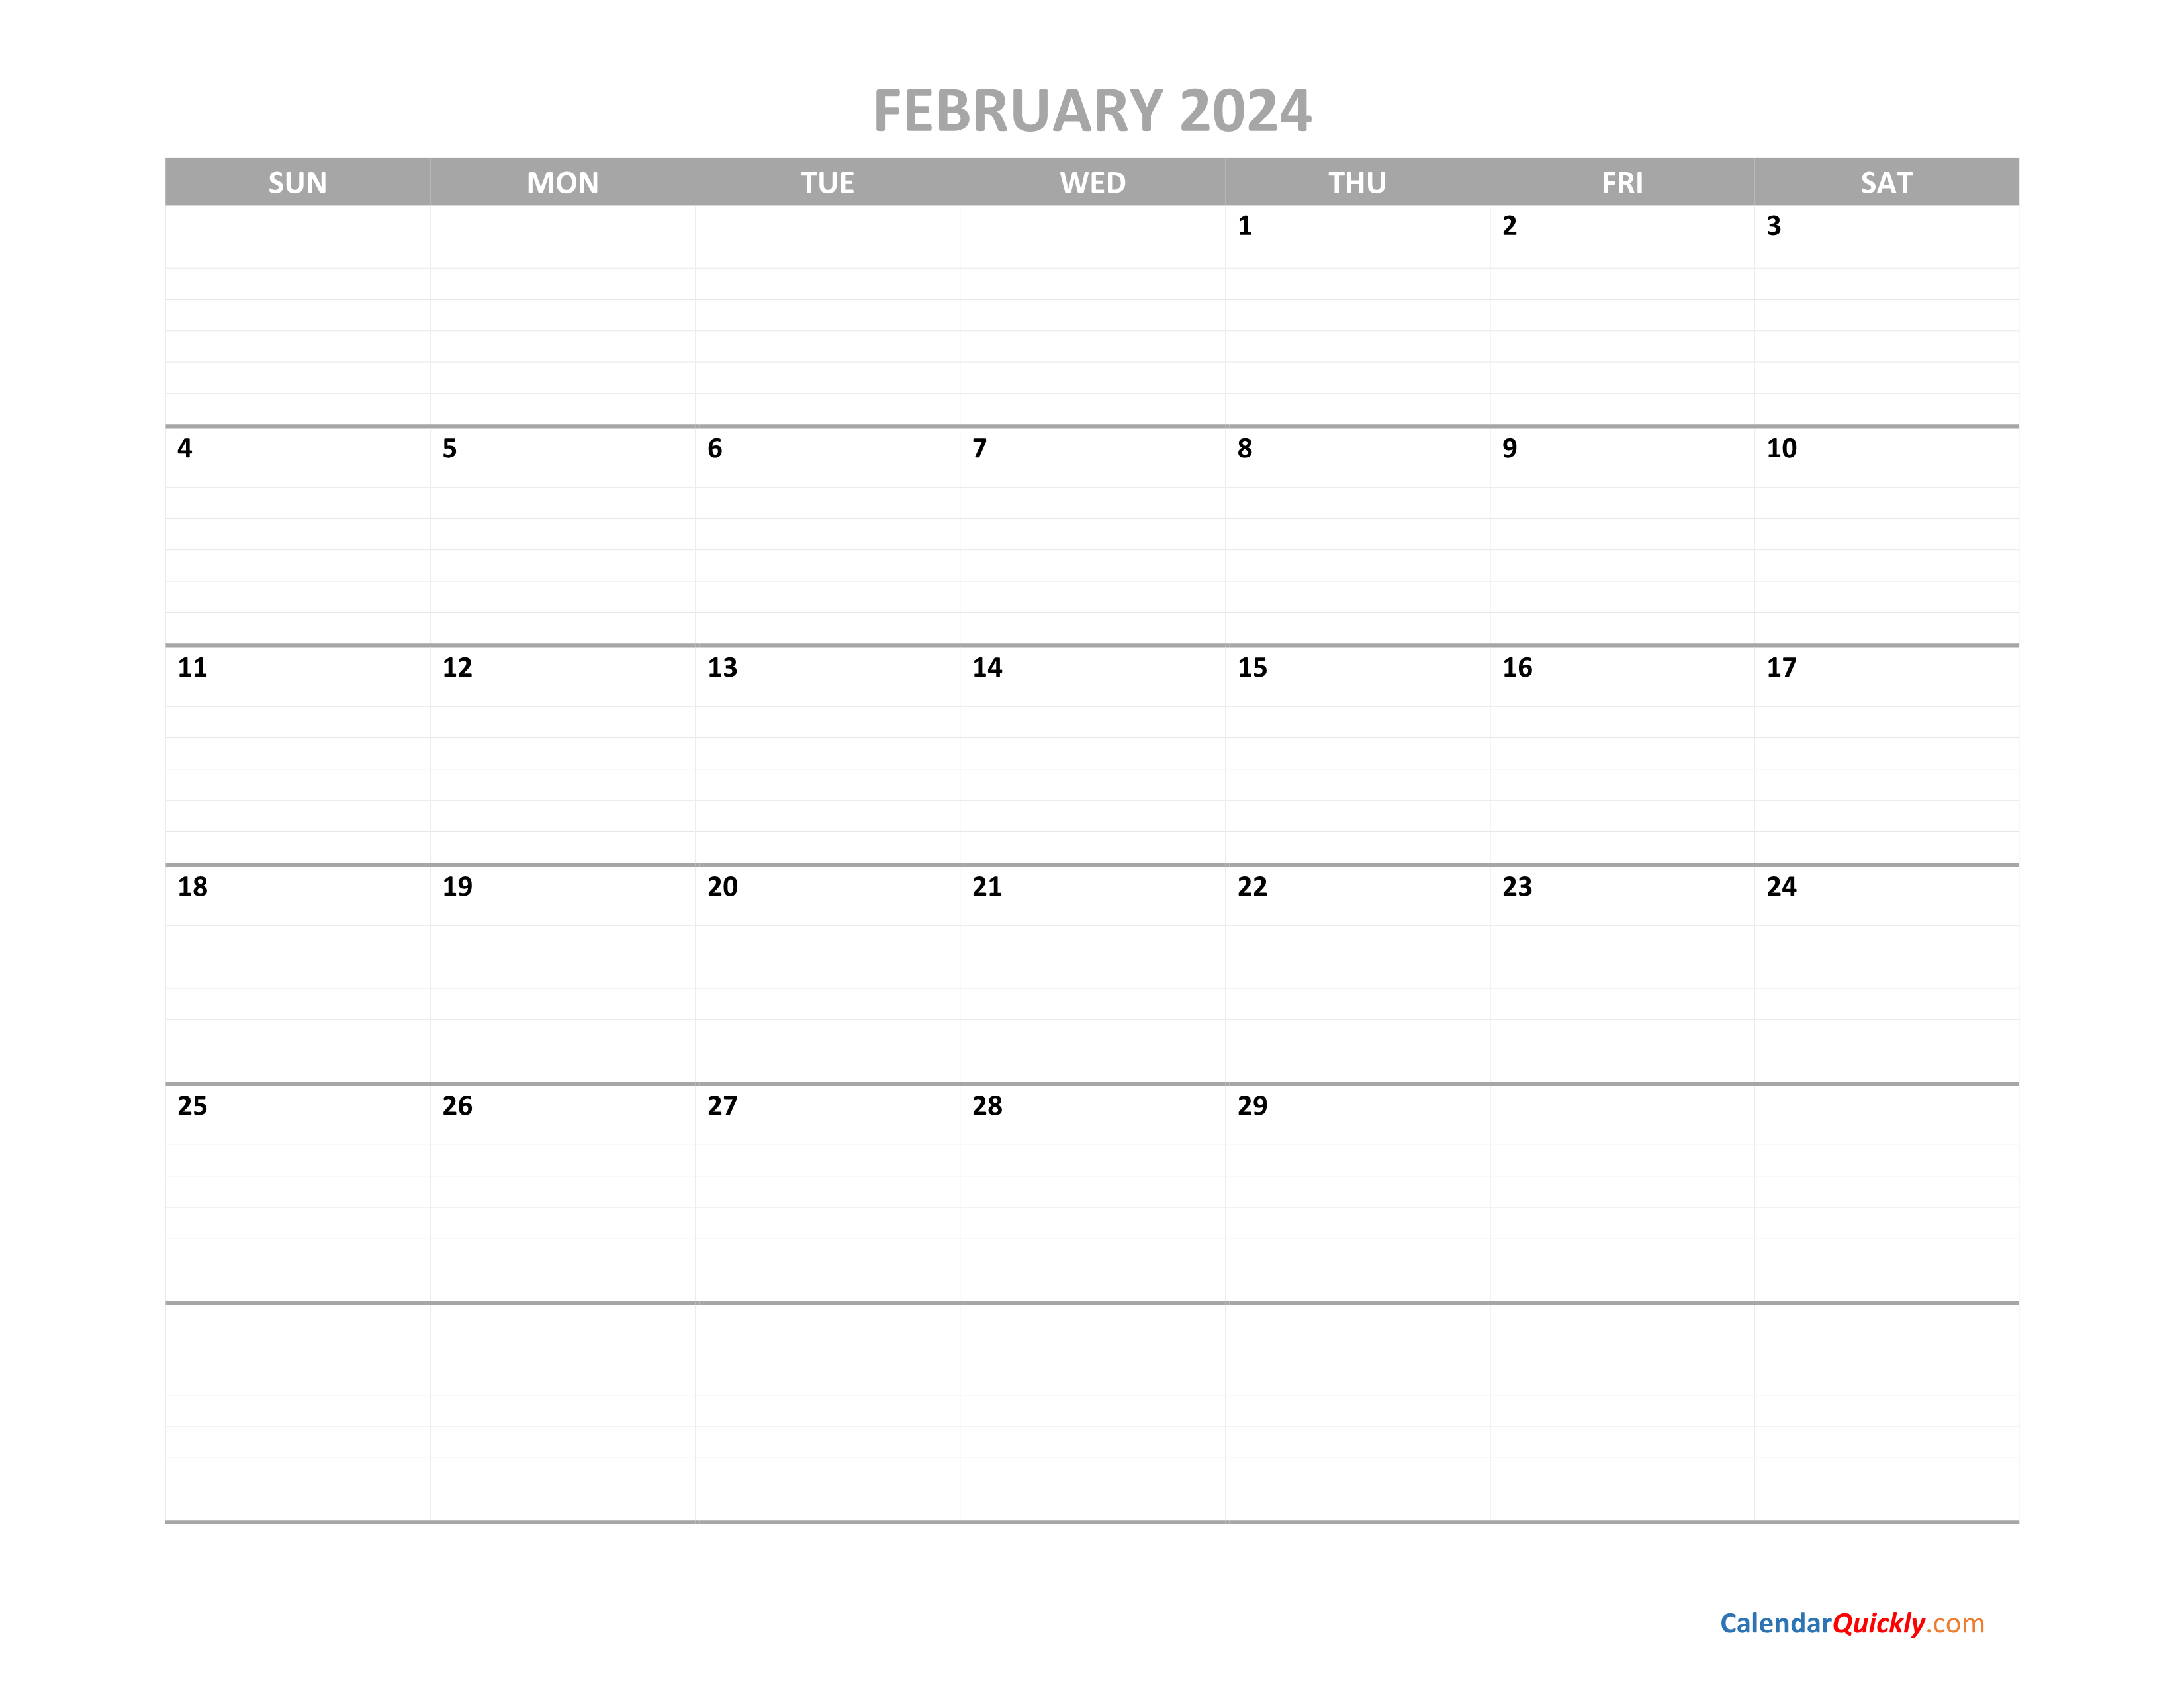 February Calendar 2024 Printable Calendar Quickly